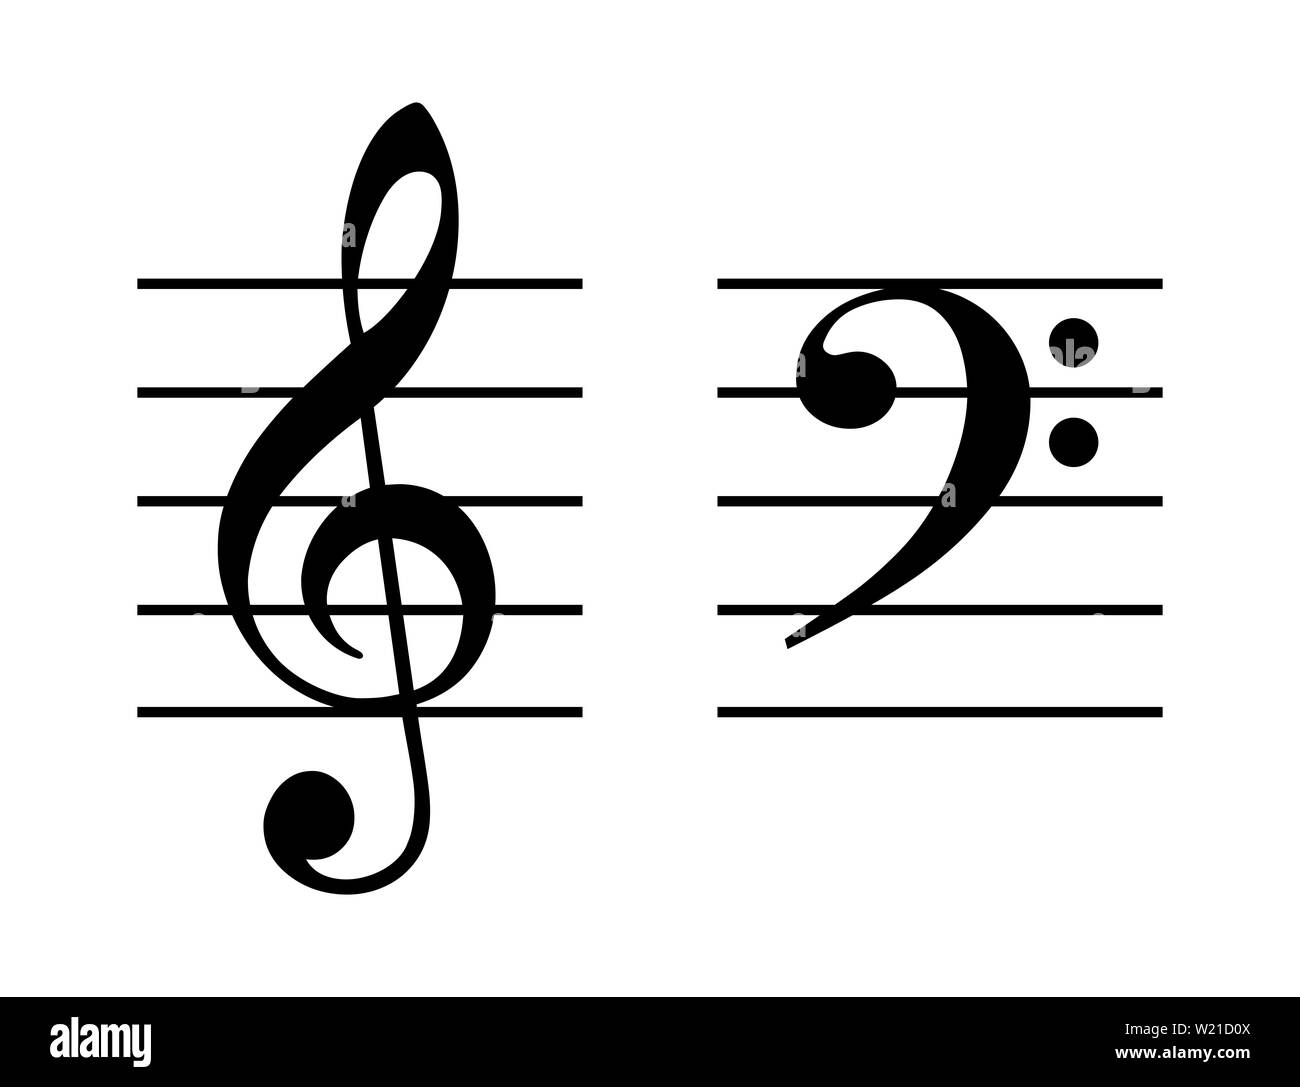 Treble und Bass clef auf fünf - Leitung Personal. G-Clef auf der zweiten Zeile und F - notenschlüssel auf der vierten Zeile der Daube. Zwei musikalische Symbole. Stockfoto